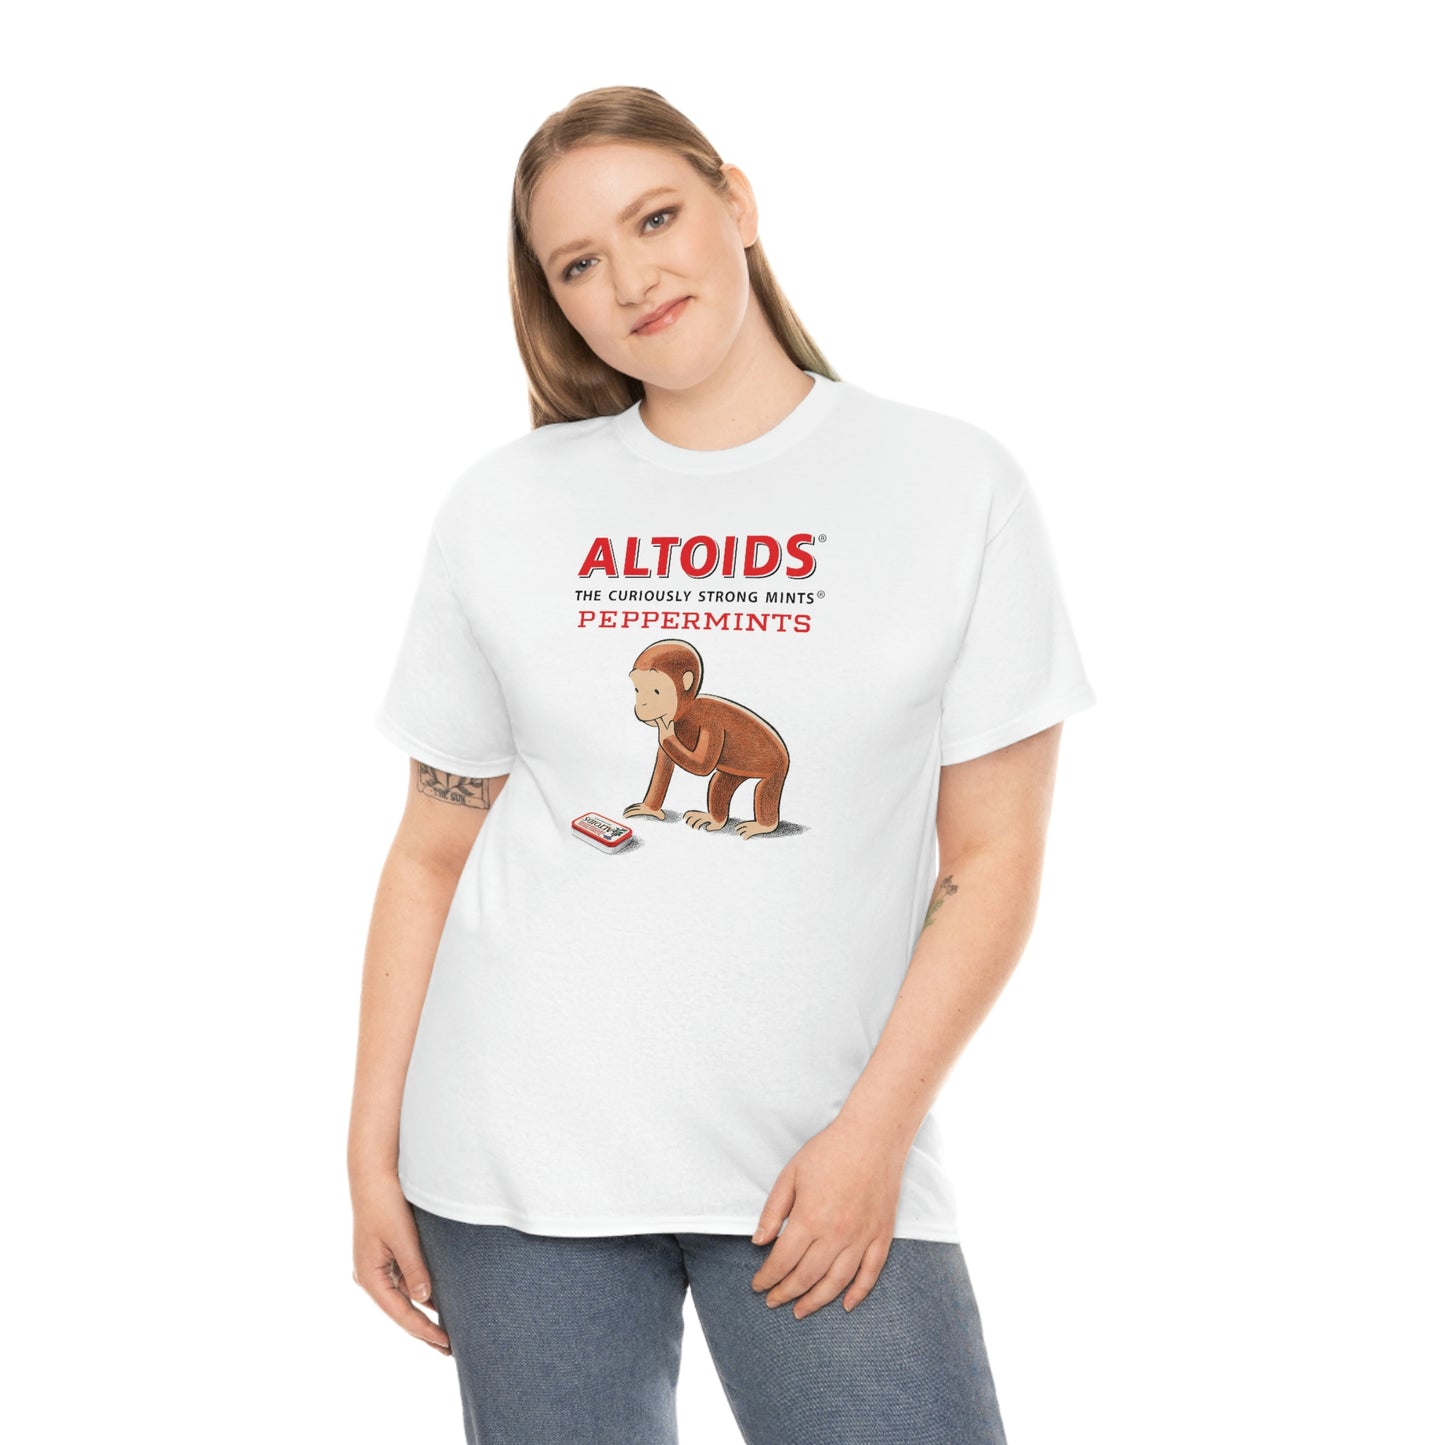 Altoids T-Shirt